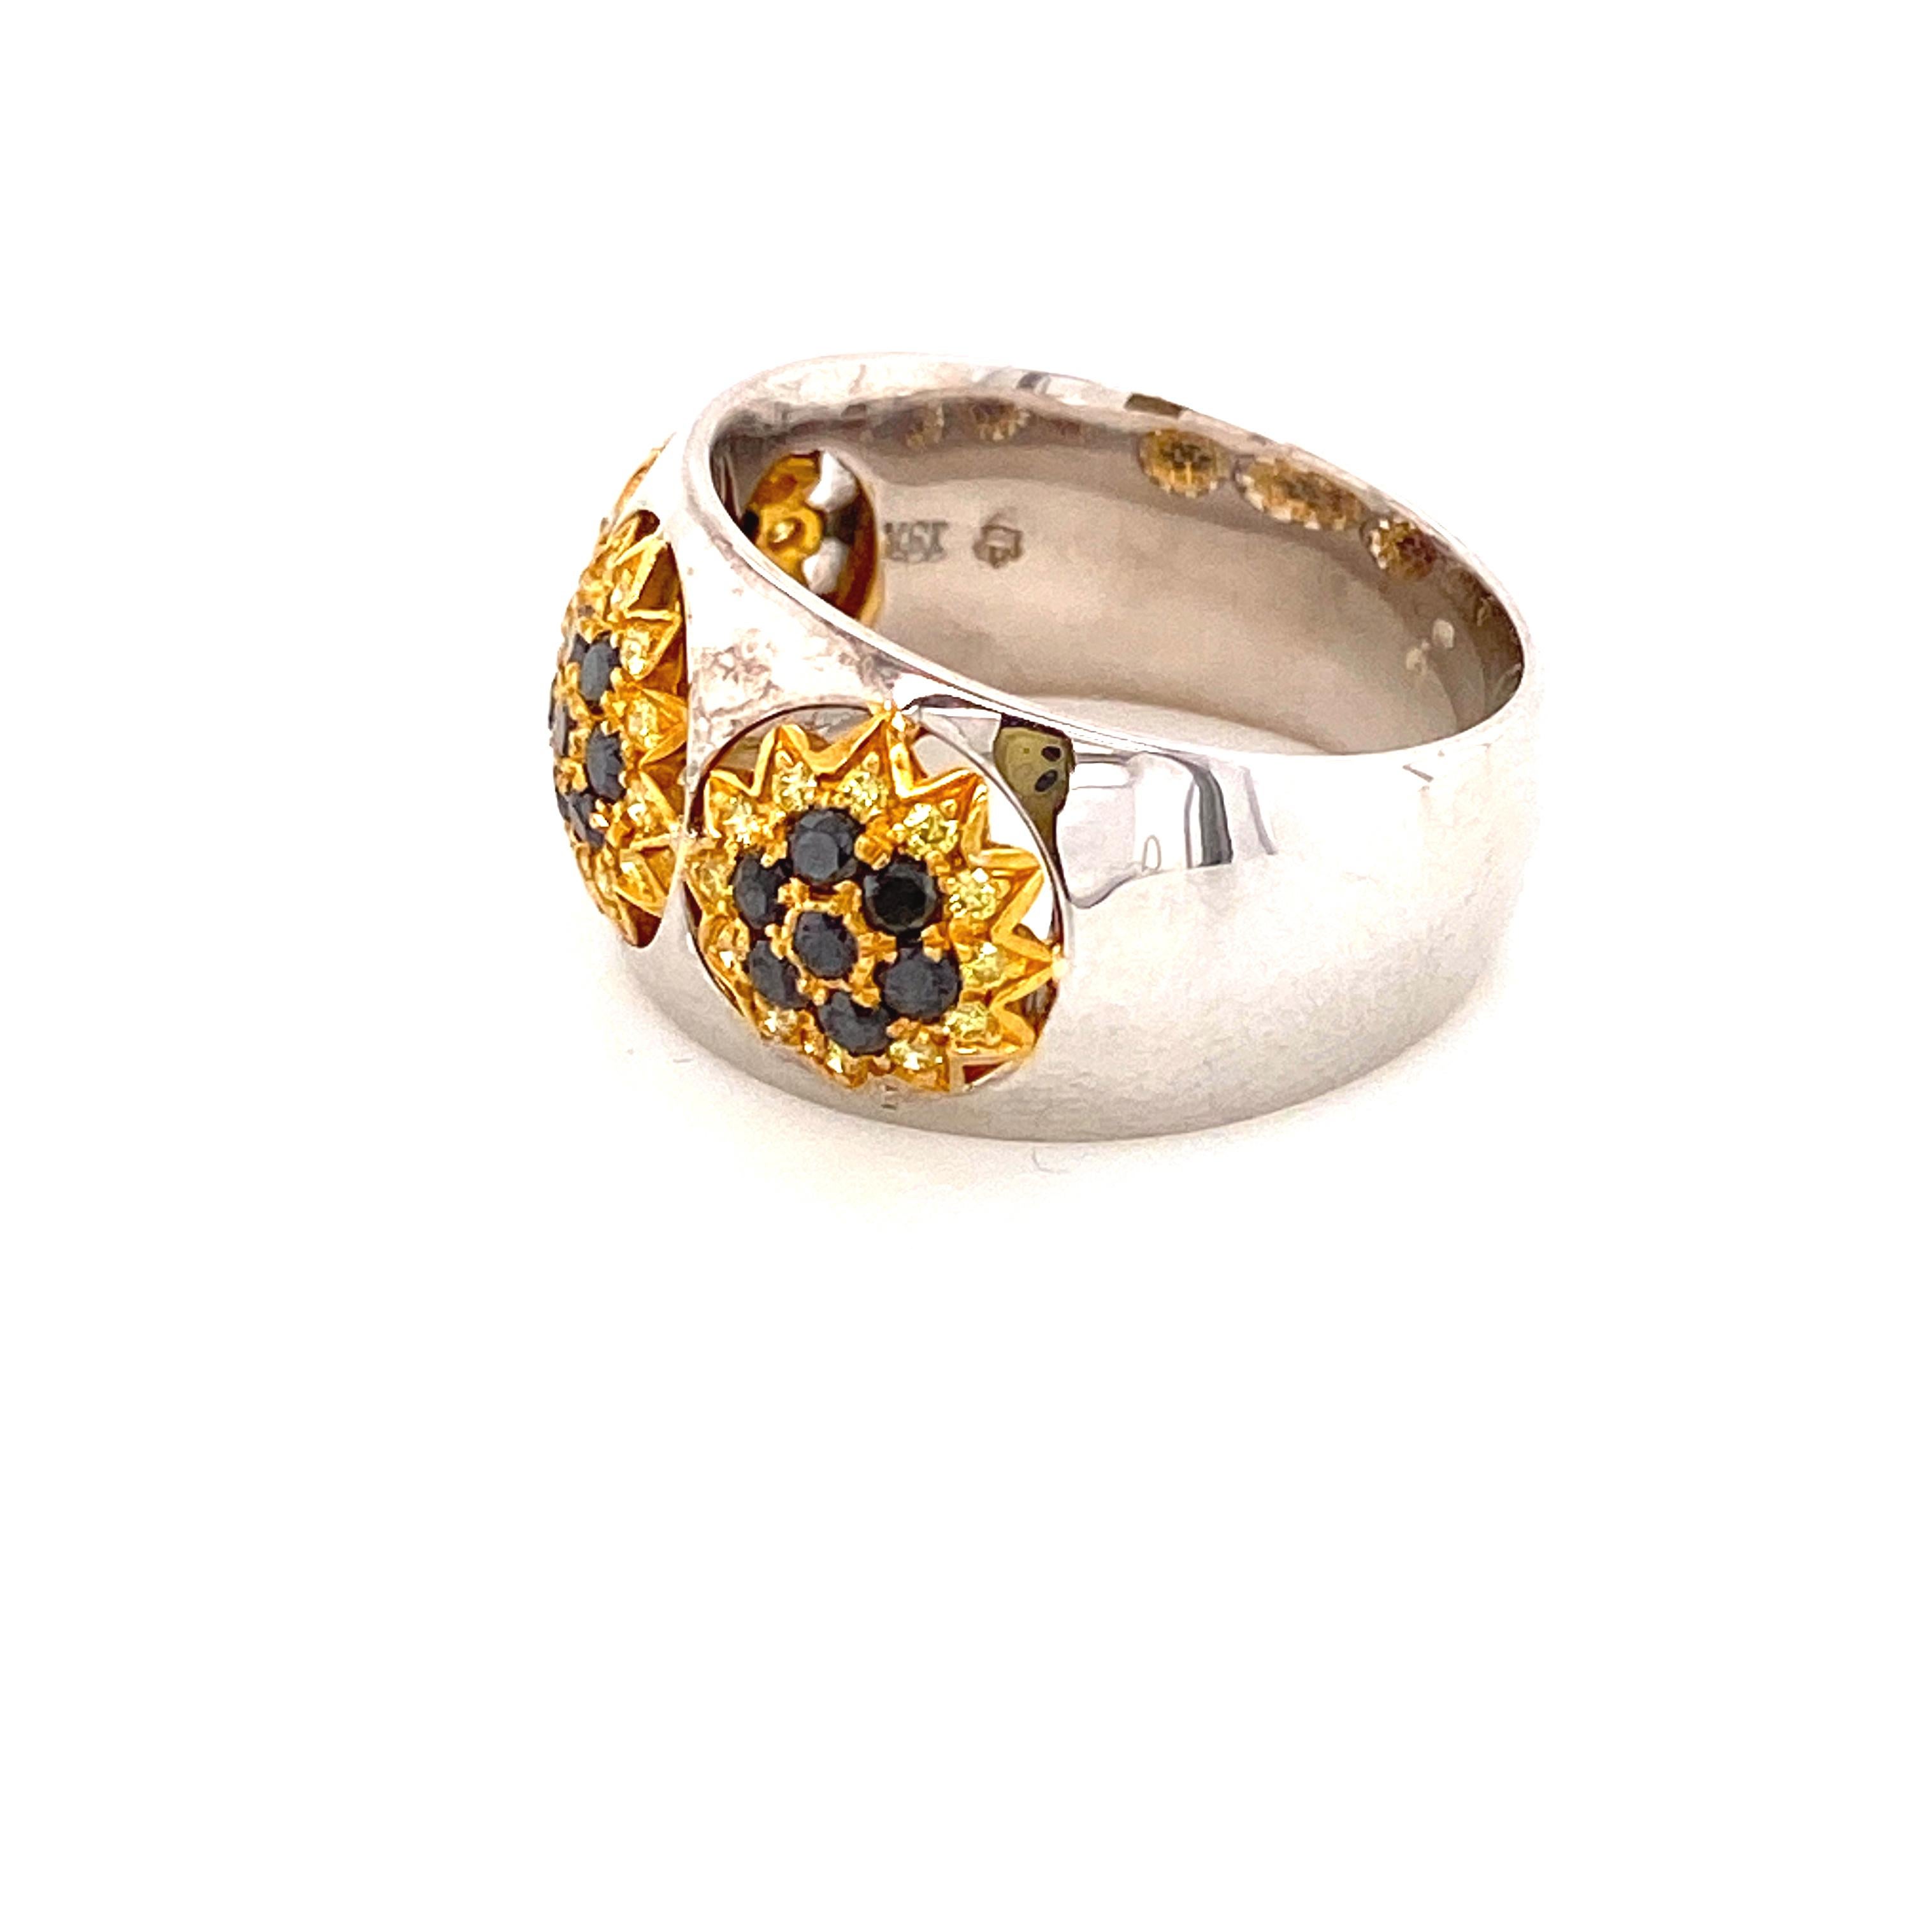 24 karat gold engagement ring